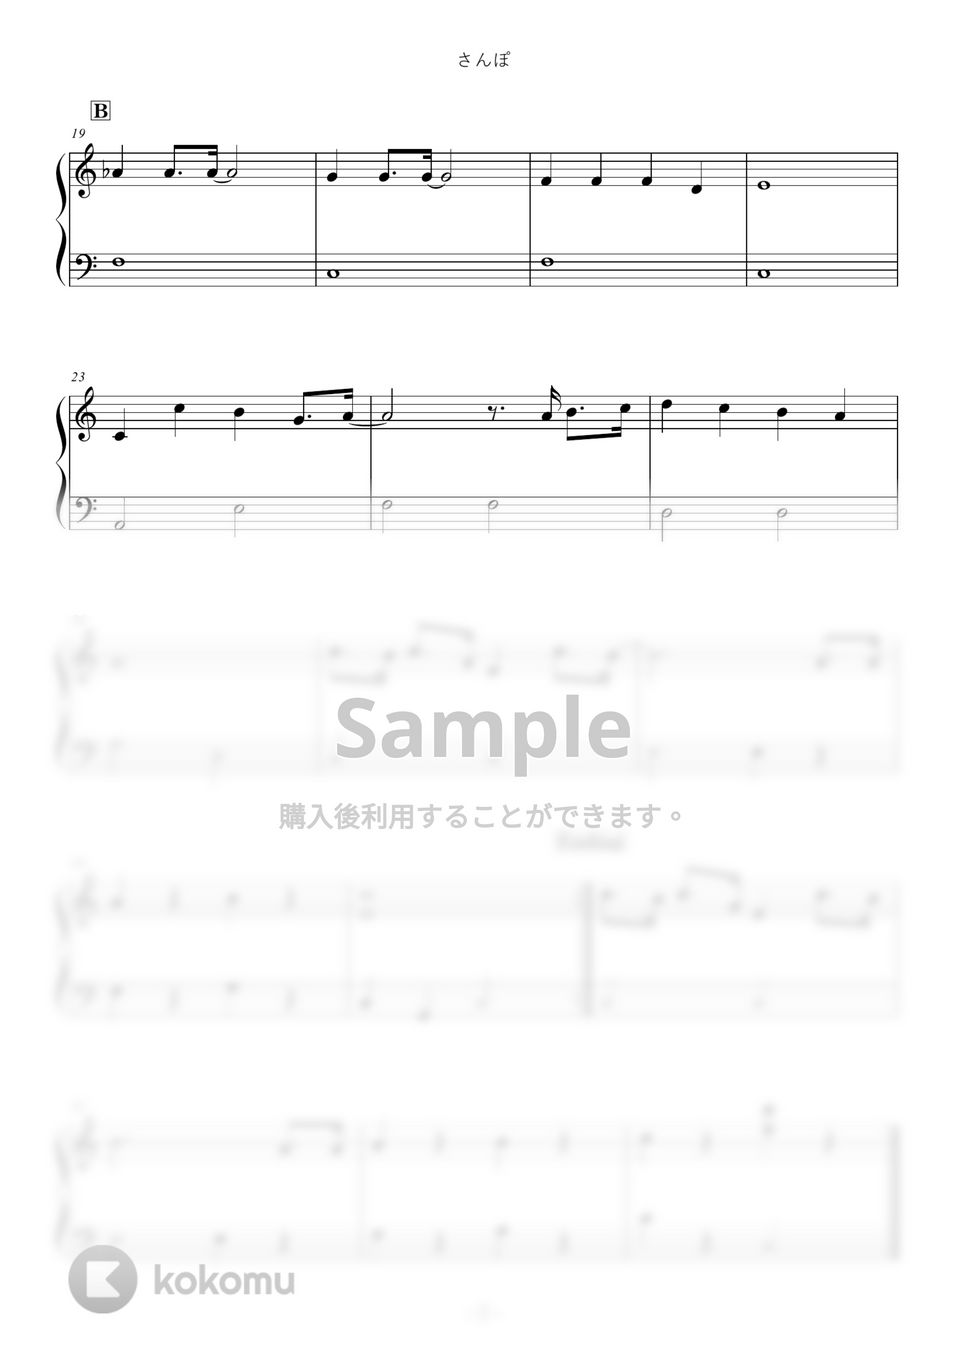 久石譲 - さんぽ (Youtubeにてゴージャスな伴奏つき) by ABIA Music